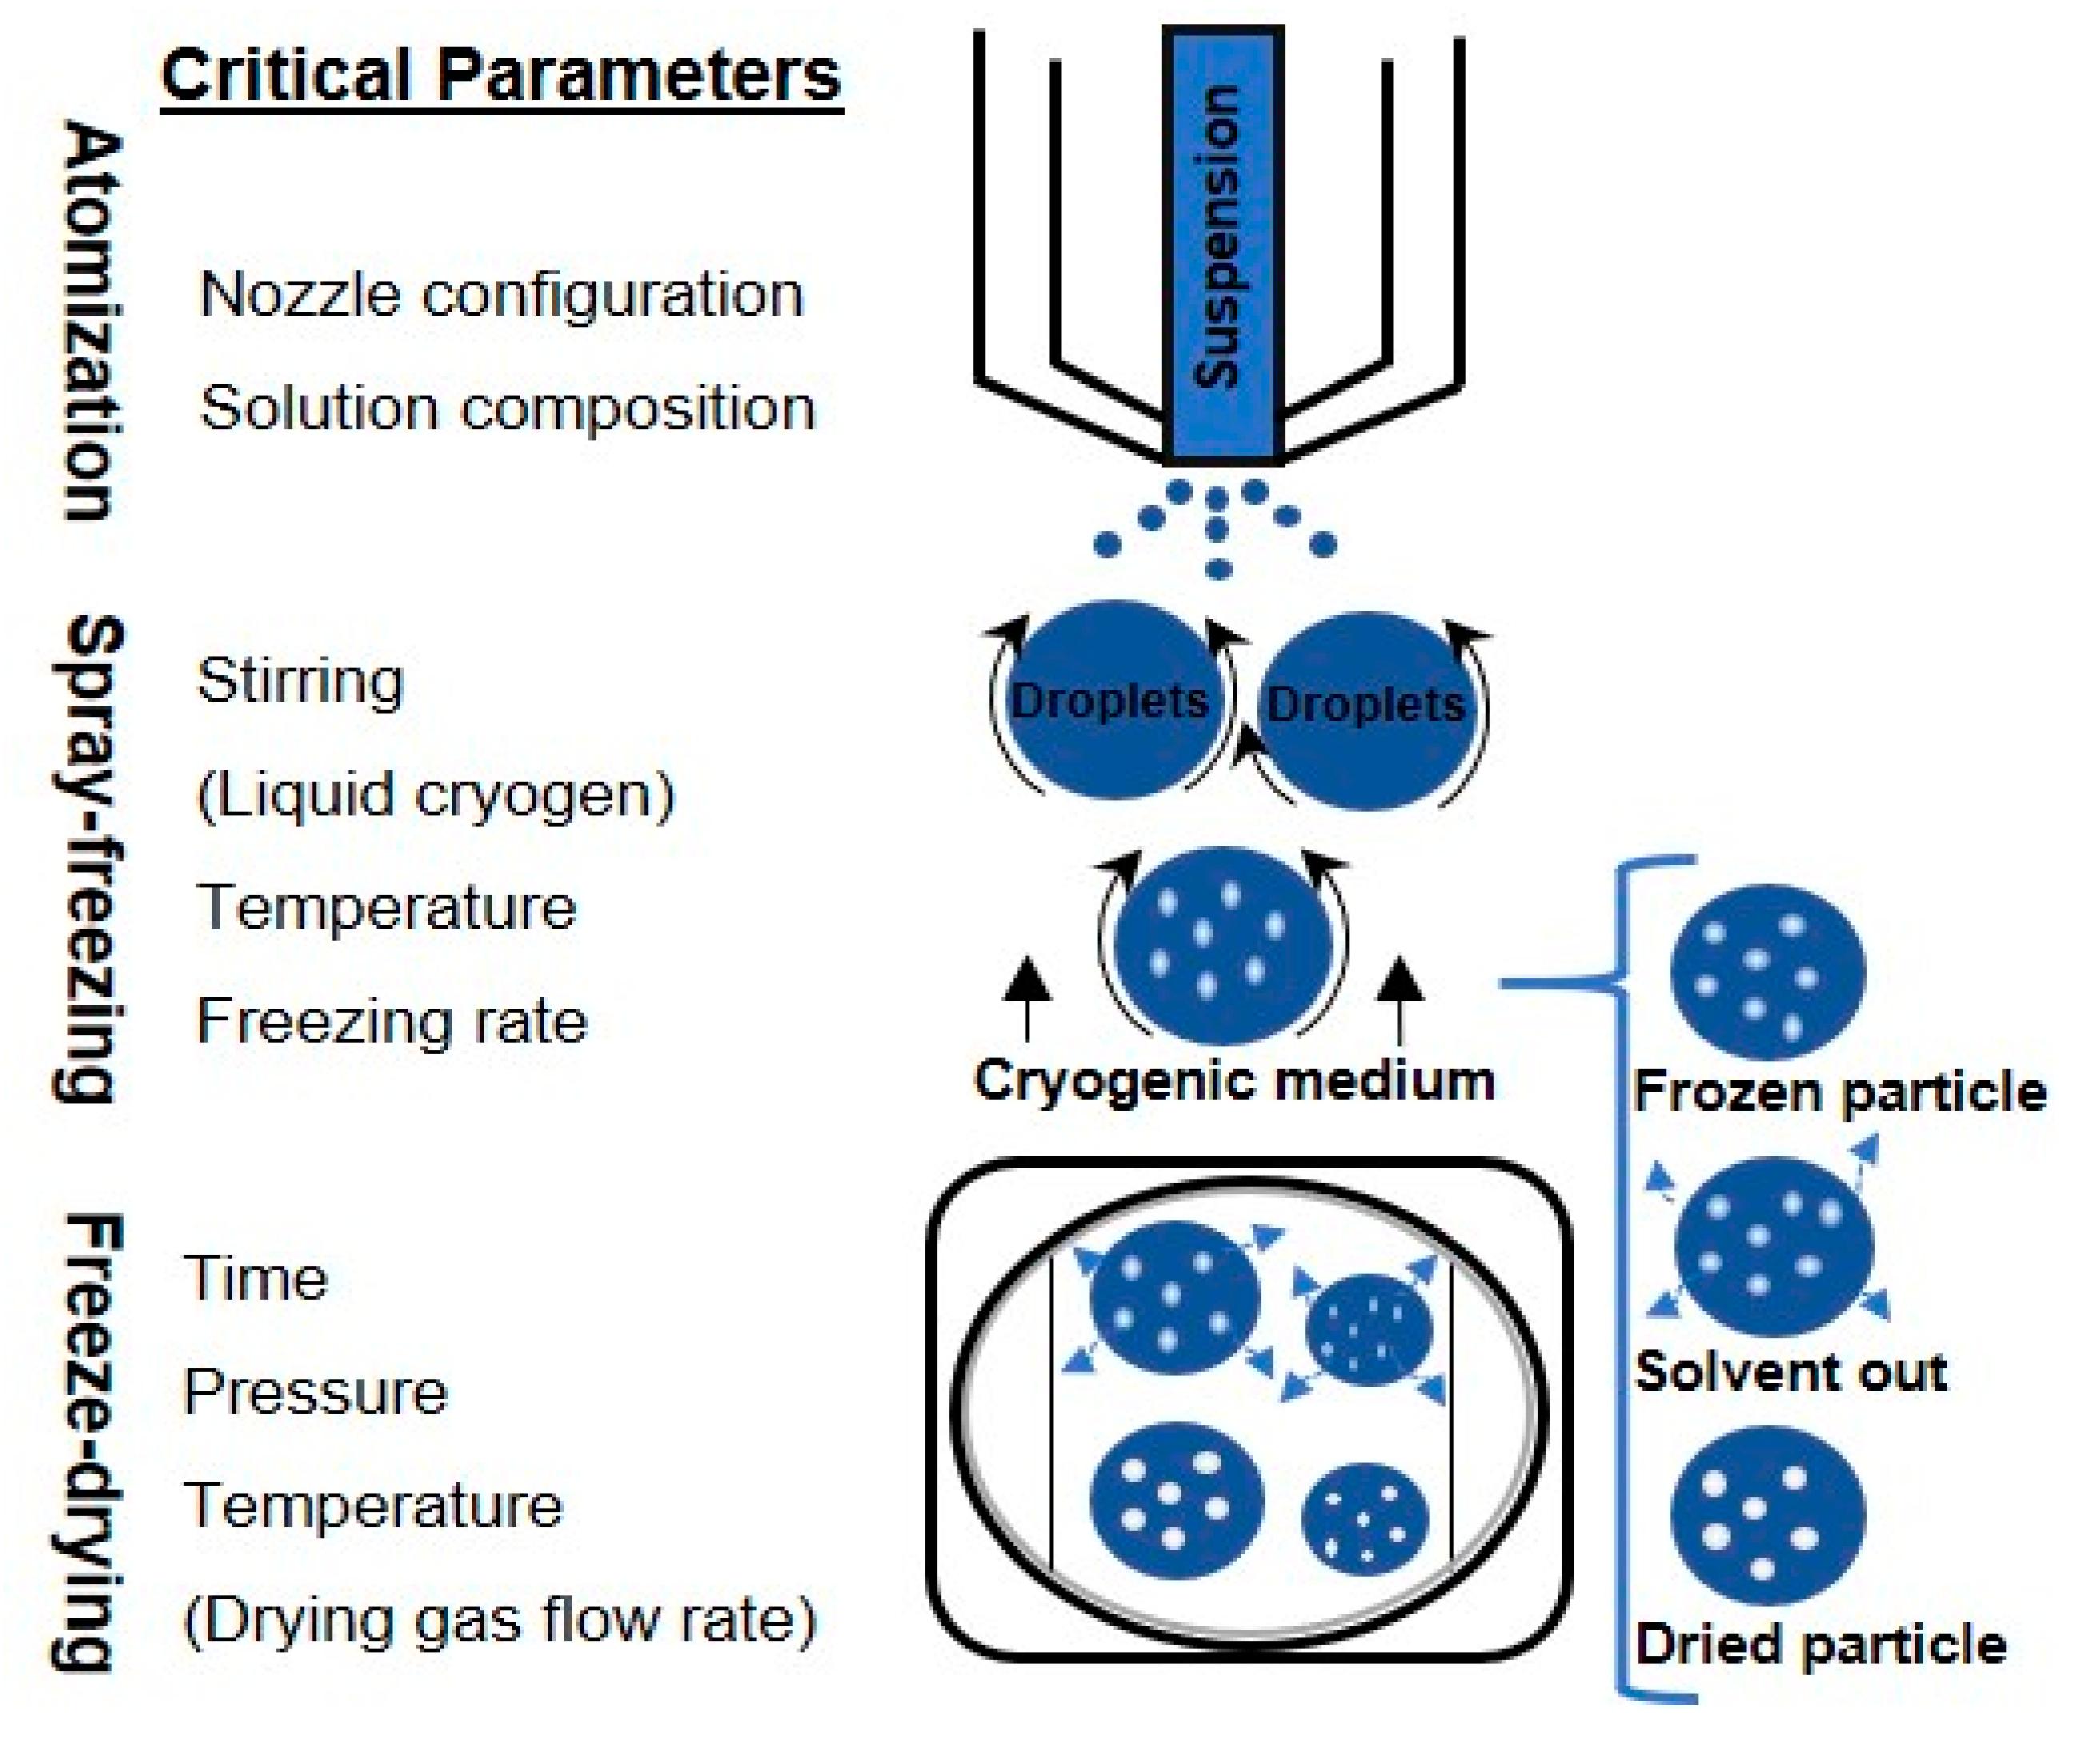 Lab Vacuum Freeze Dryer Lyophilizer Sublimation Freezing Drying